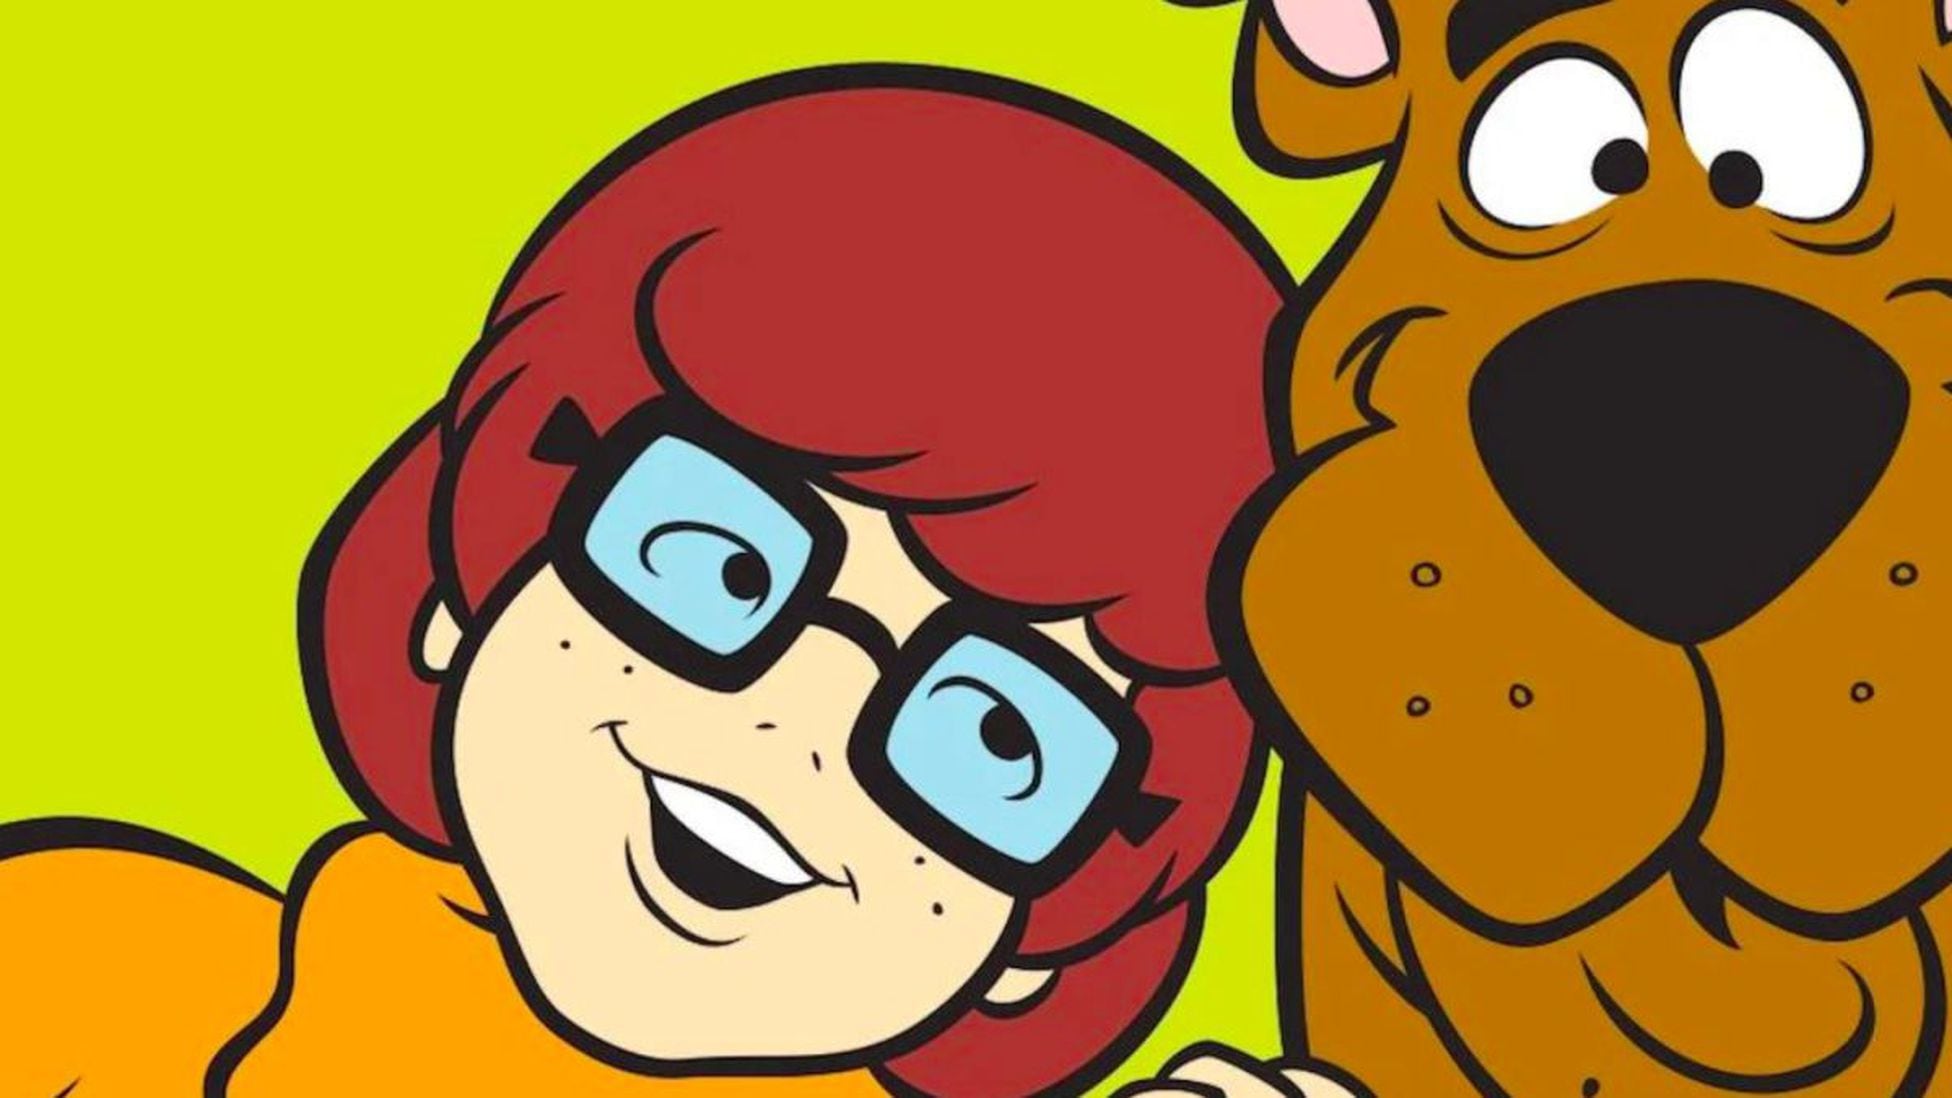 Velma la nueva serie de Scooby-Doo sólo para adultos: tendrá violencia explícita y humor - Meristation